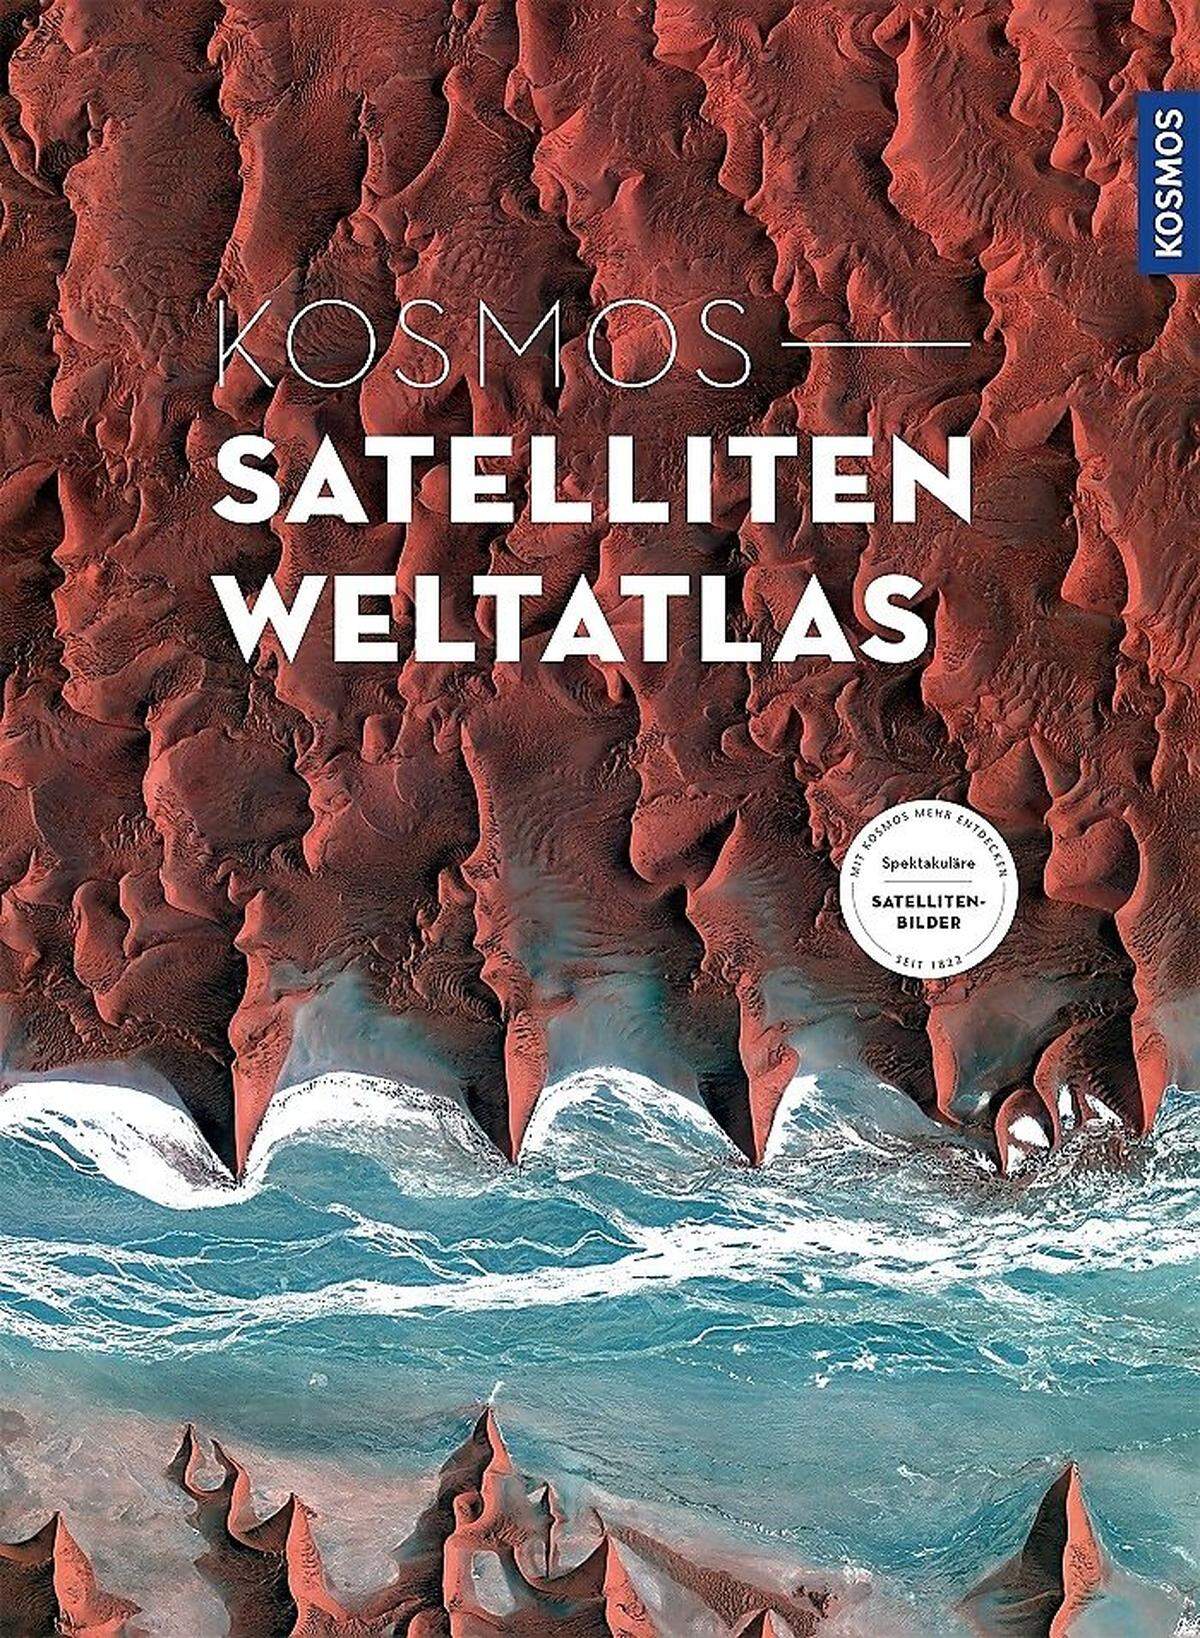 Die Satellitenaufnahmen stammen aus dem "Kosmos Satelliten-Weltatlas", der im Kosmos Verlag erschienen ist. Er ist im Handel um 78 Euro erhältlich.